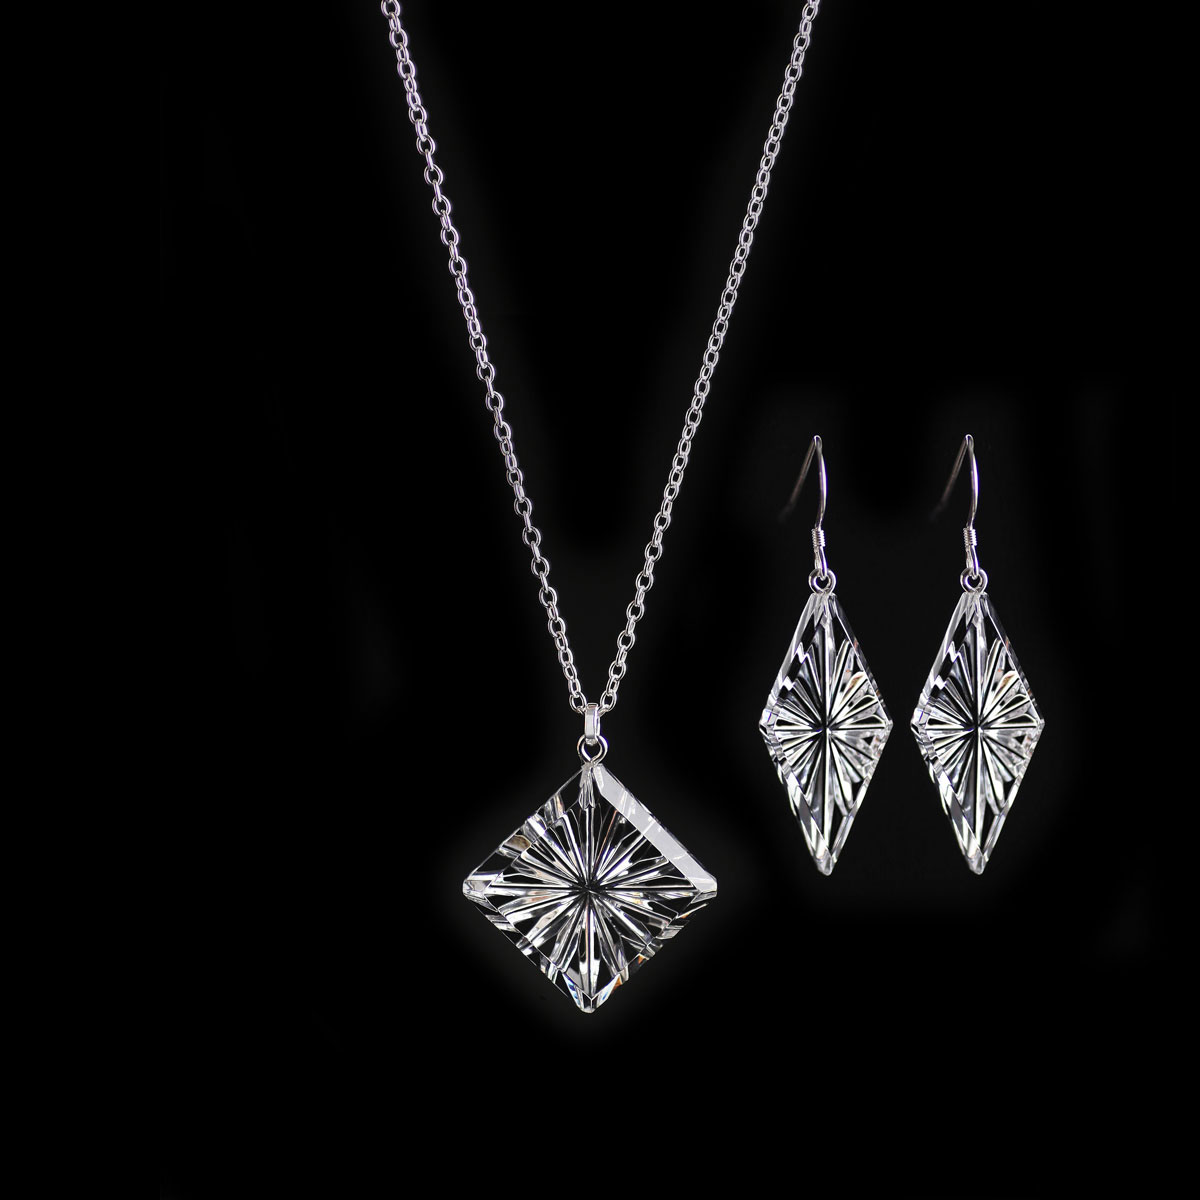 Cashs Ireland, Diamond Newgrange Necklace and Earrings Gift Set